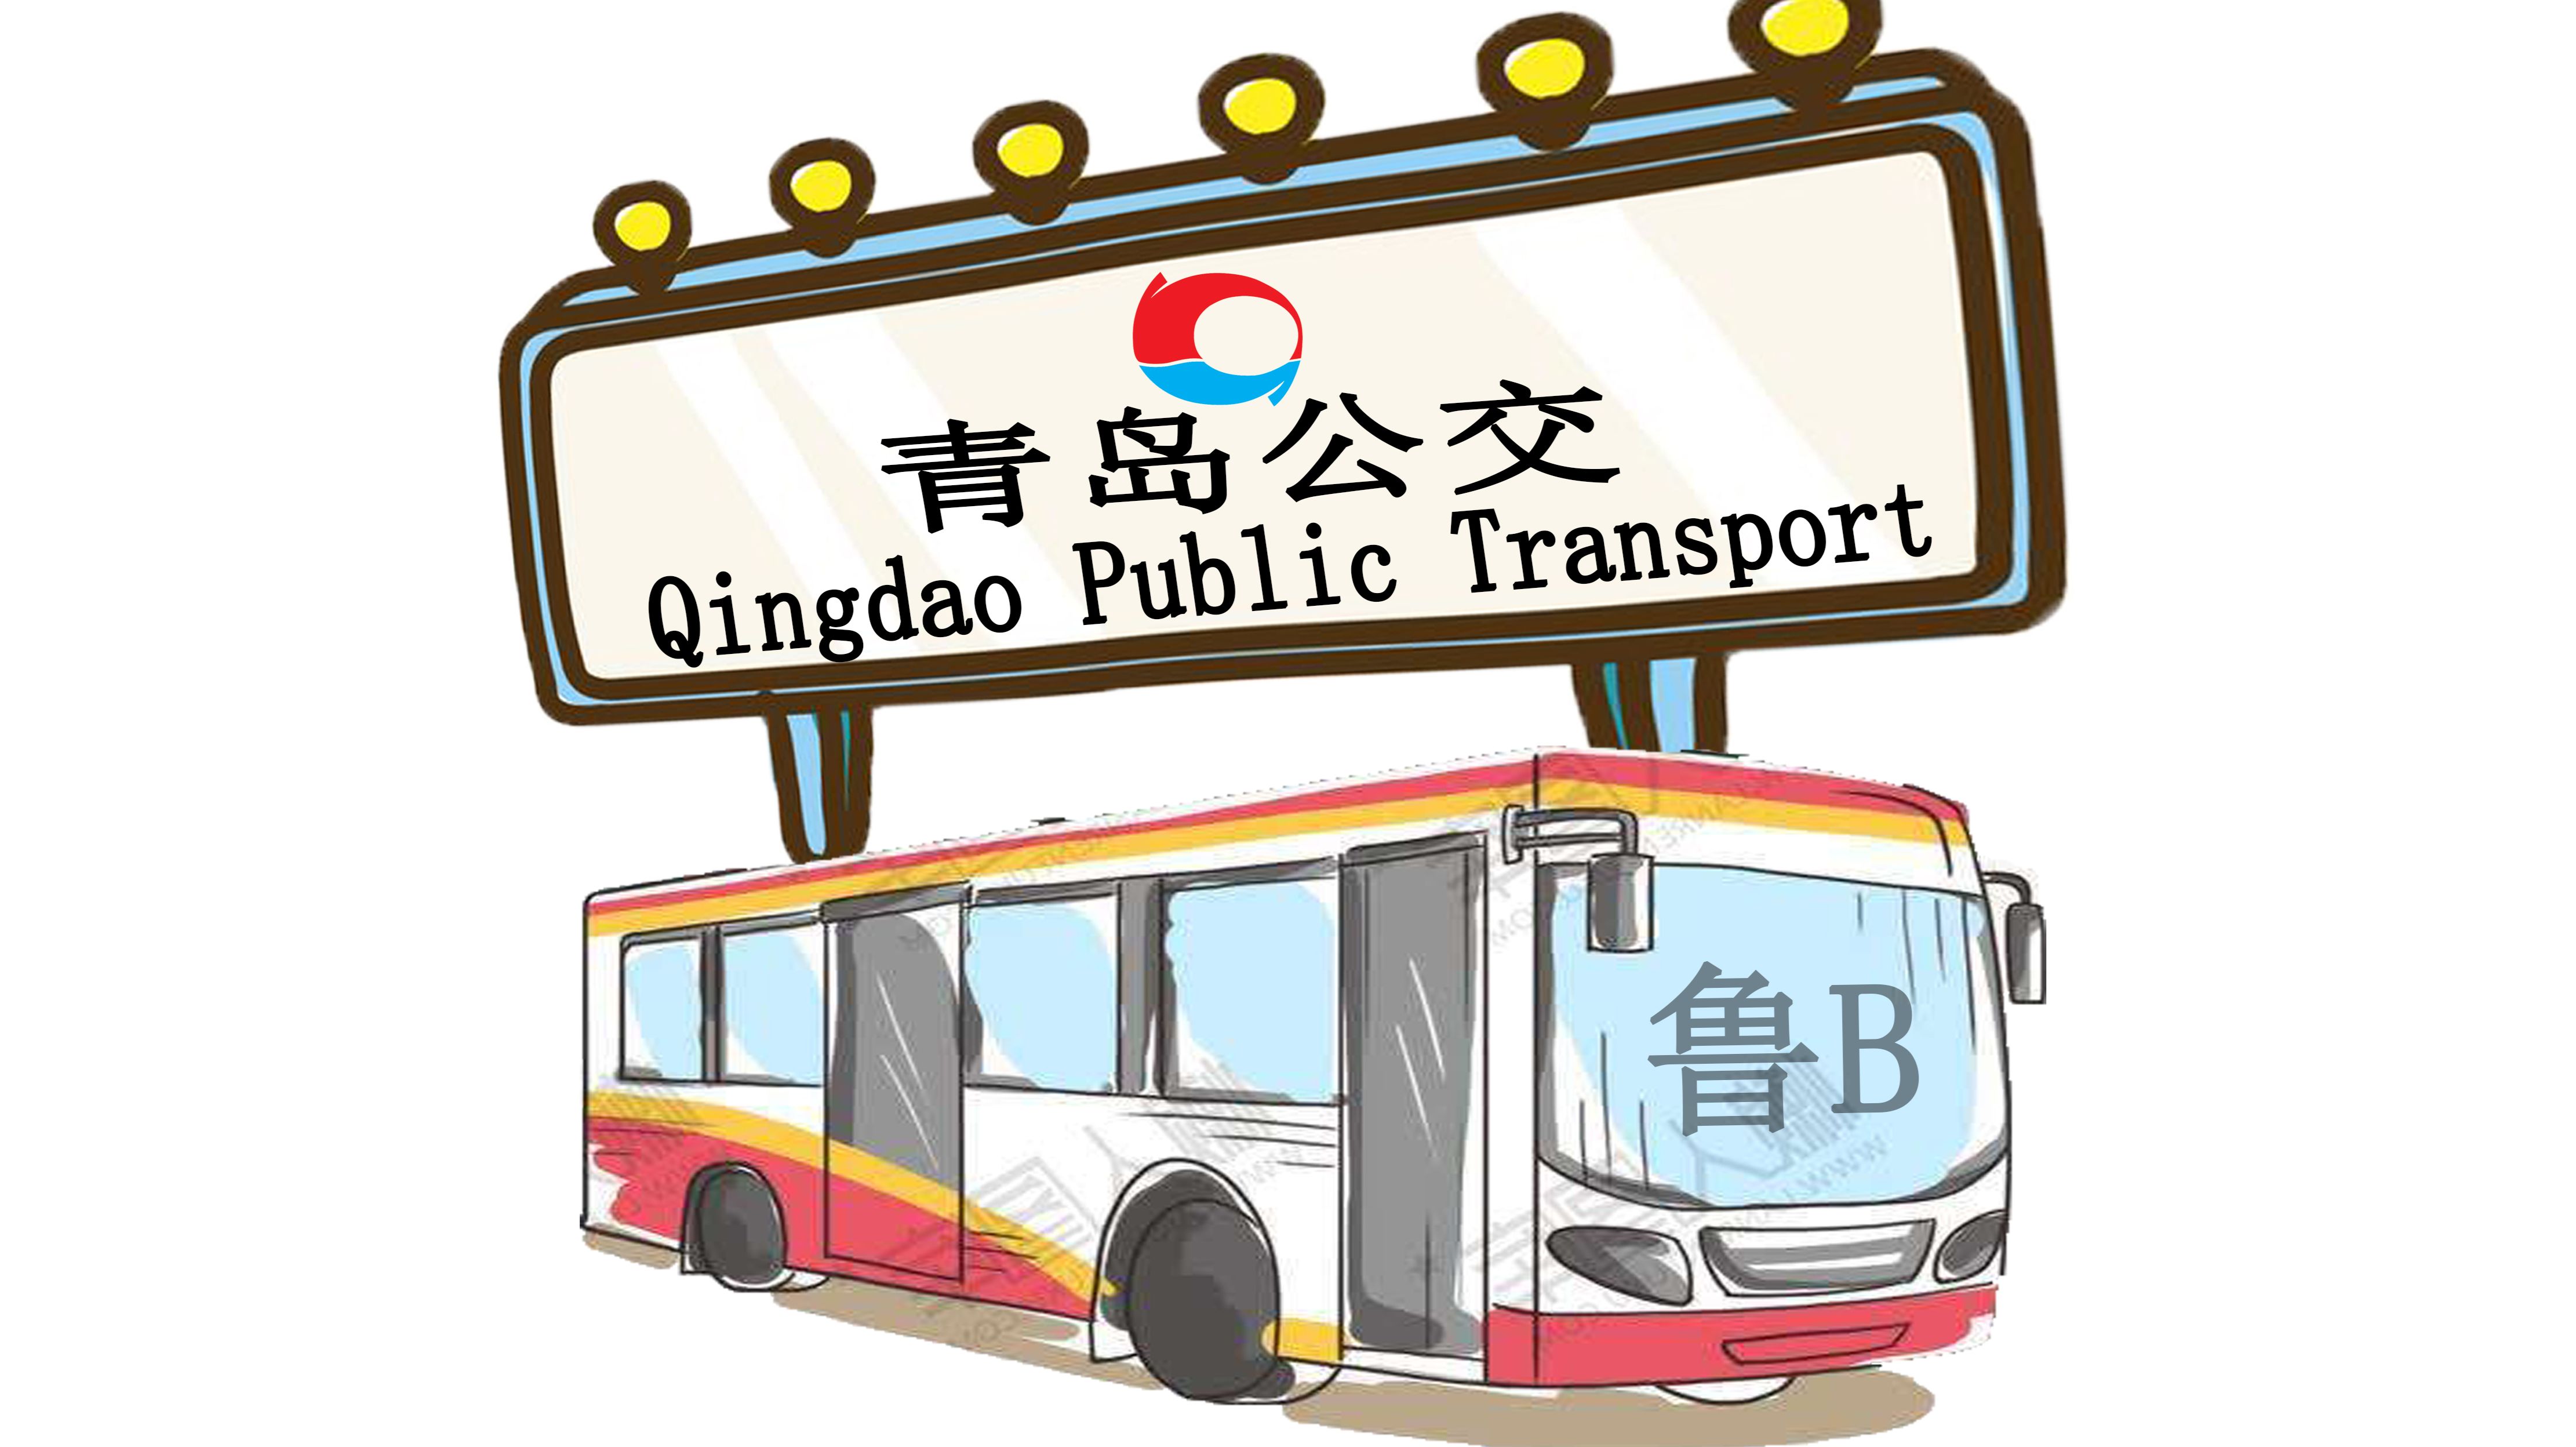 青岛公交智能出行 提升城市公交便捷性、智能化 - 青岛新闻网